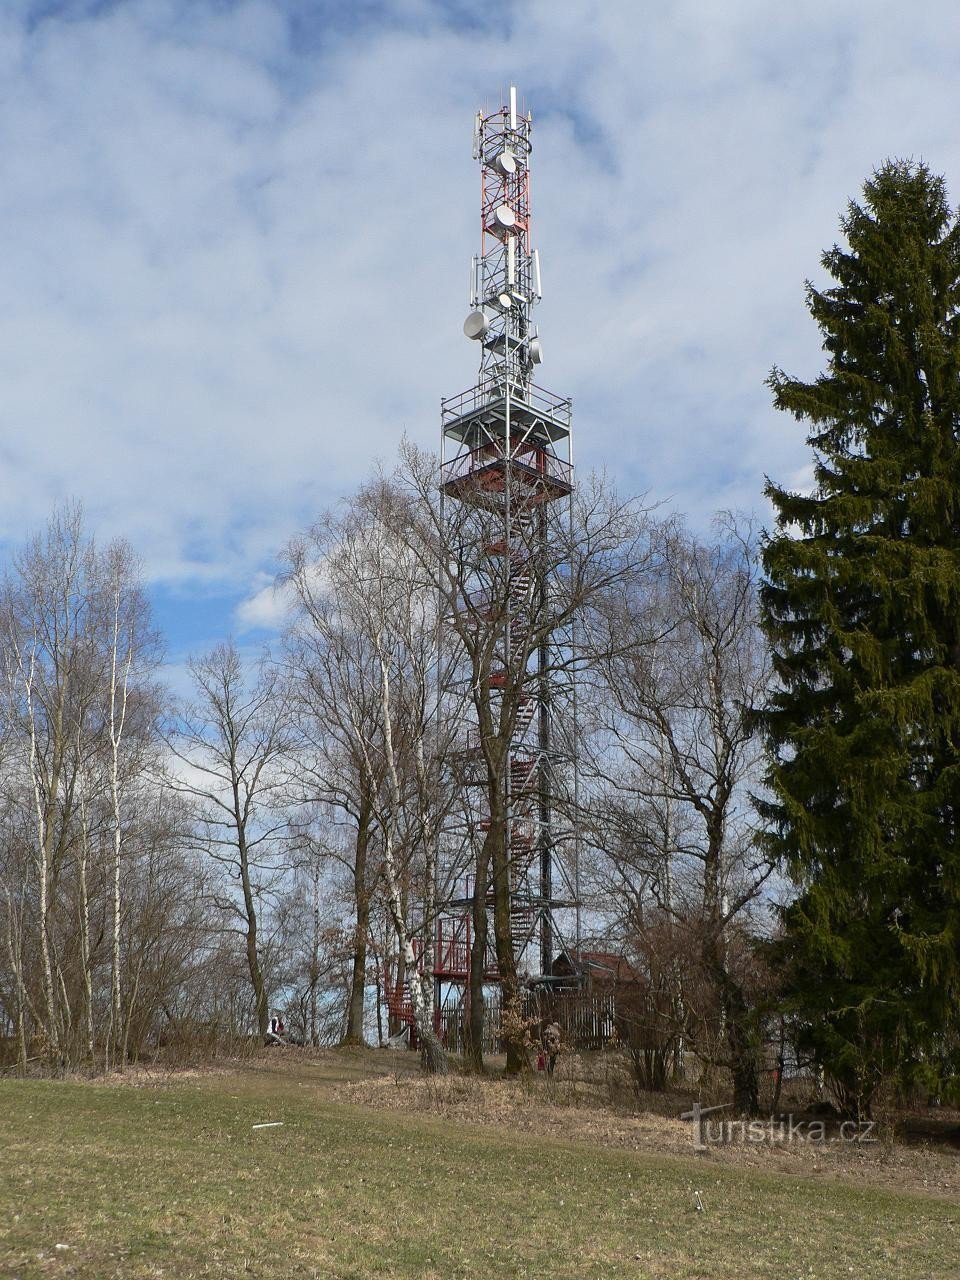 tháp quan sát Slabošovka